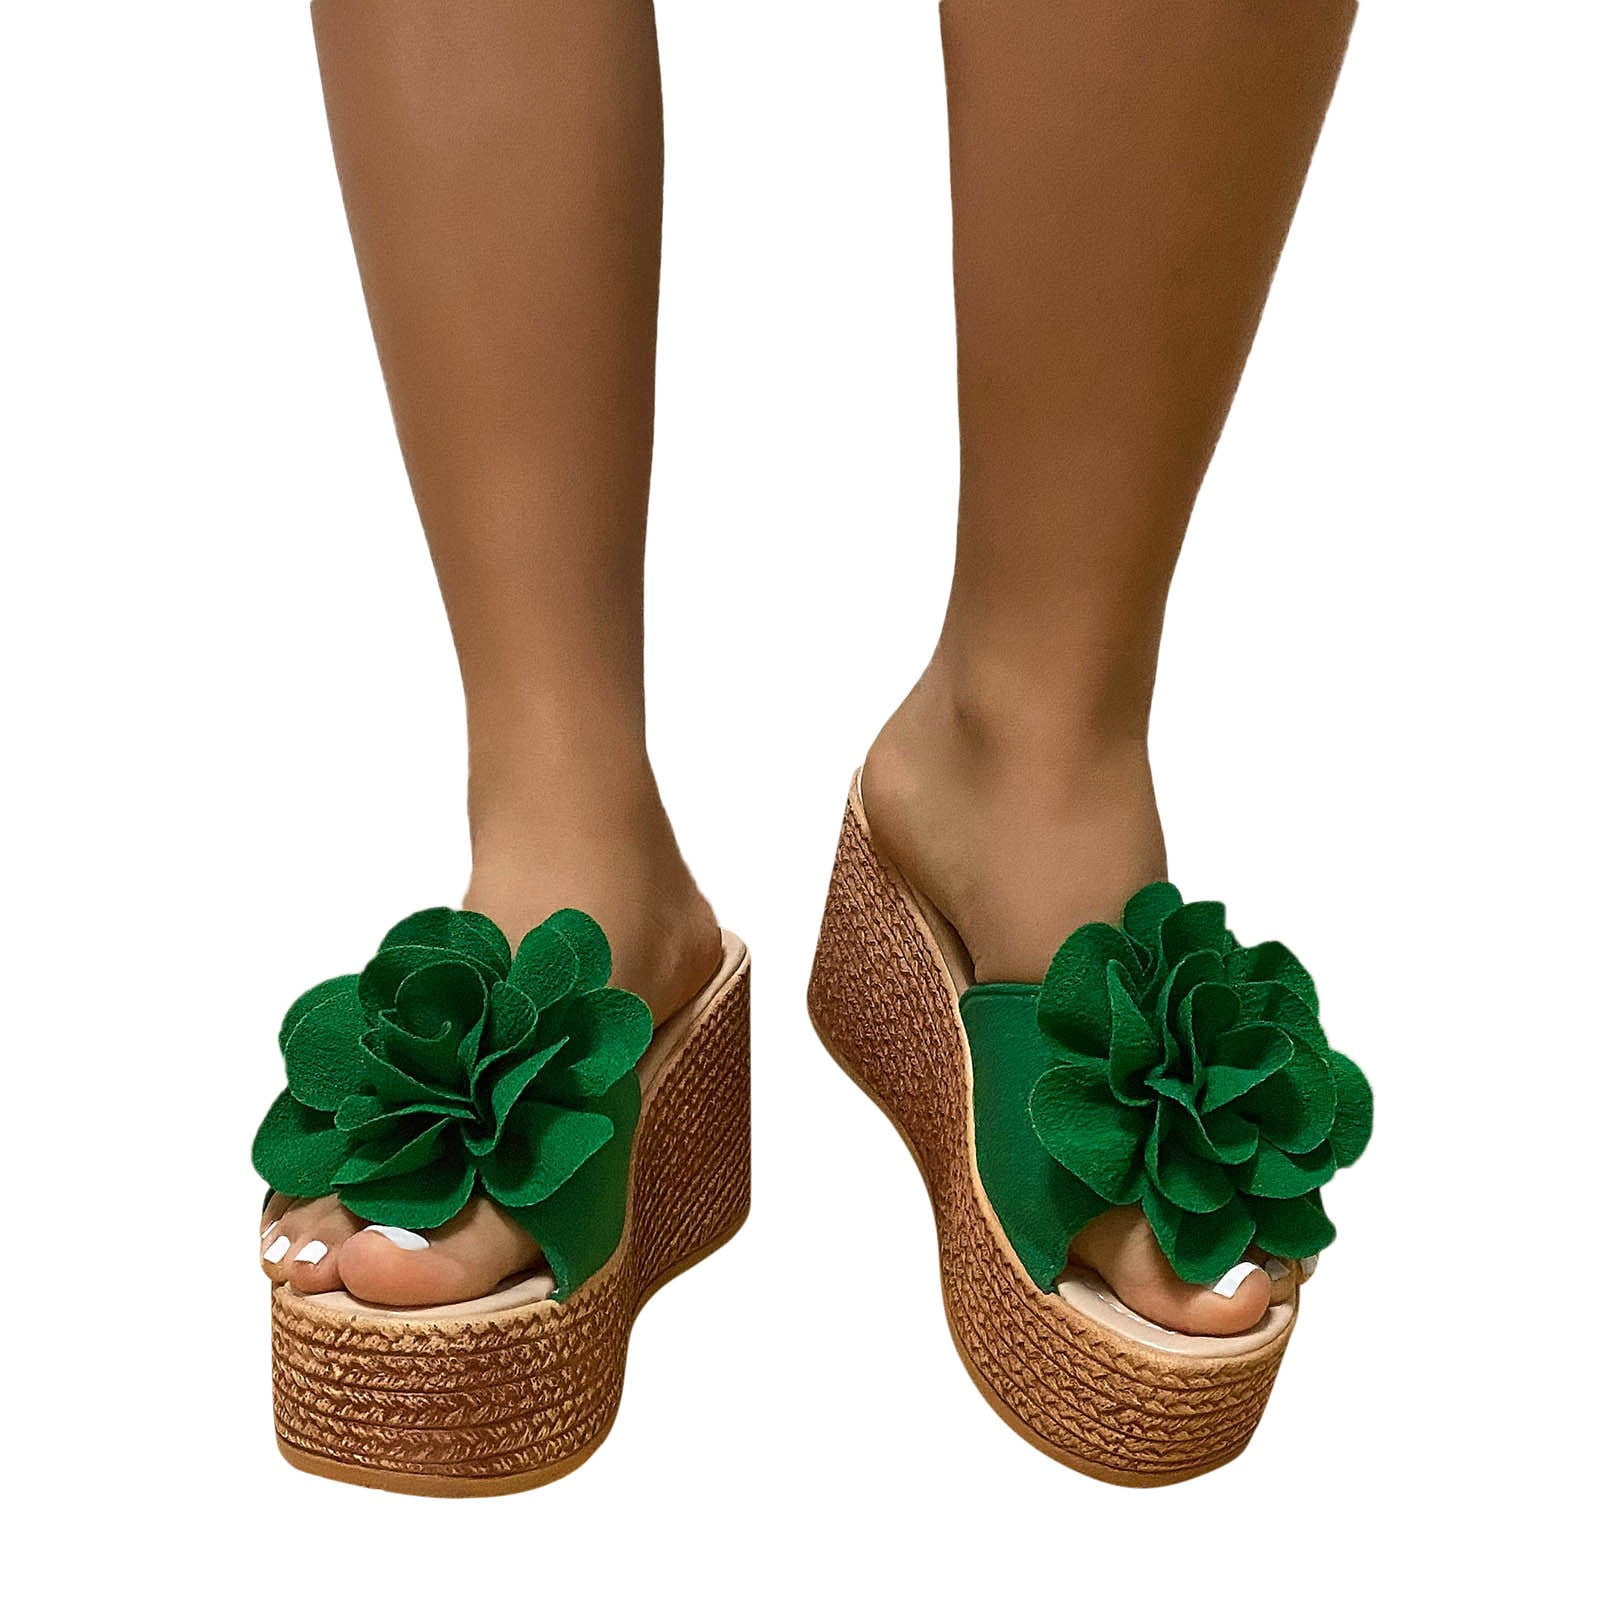 Fashion Spring And Summer Women Sandals Wedge Heel Suede Flower